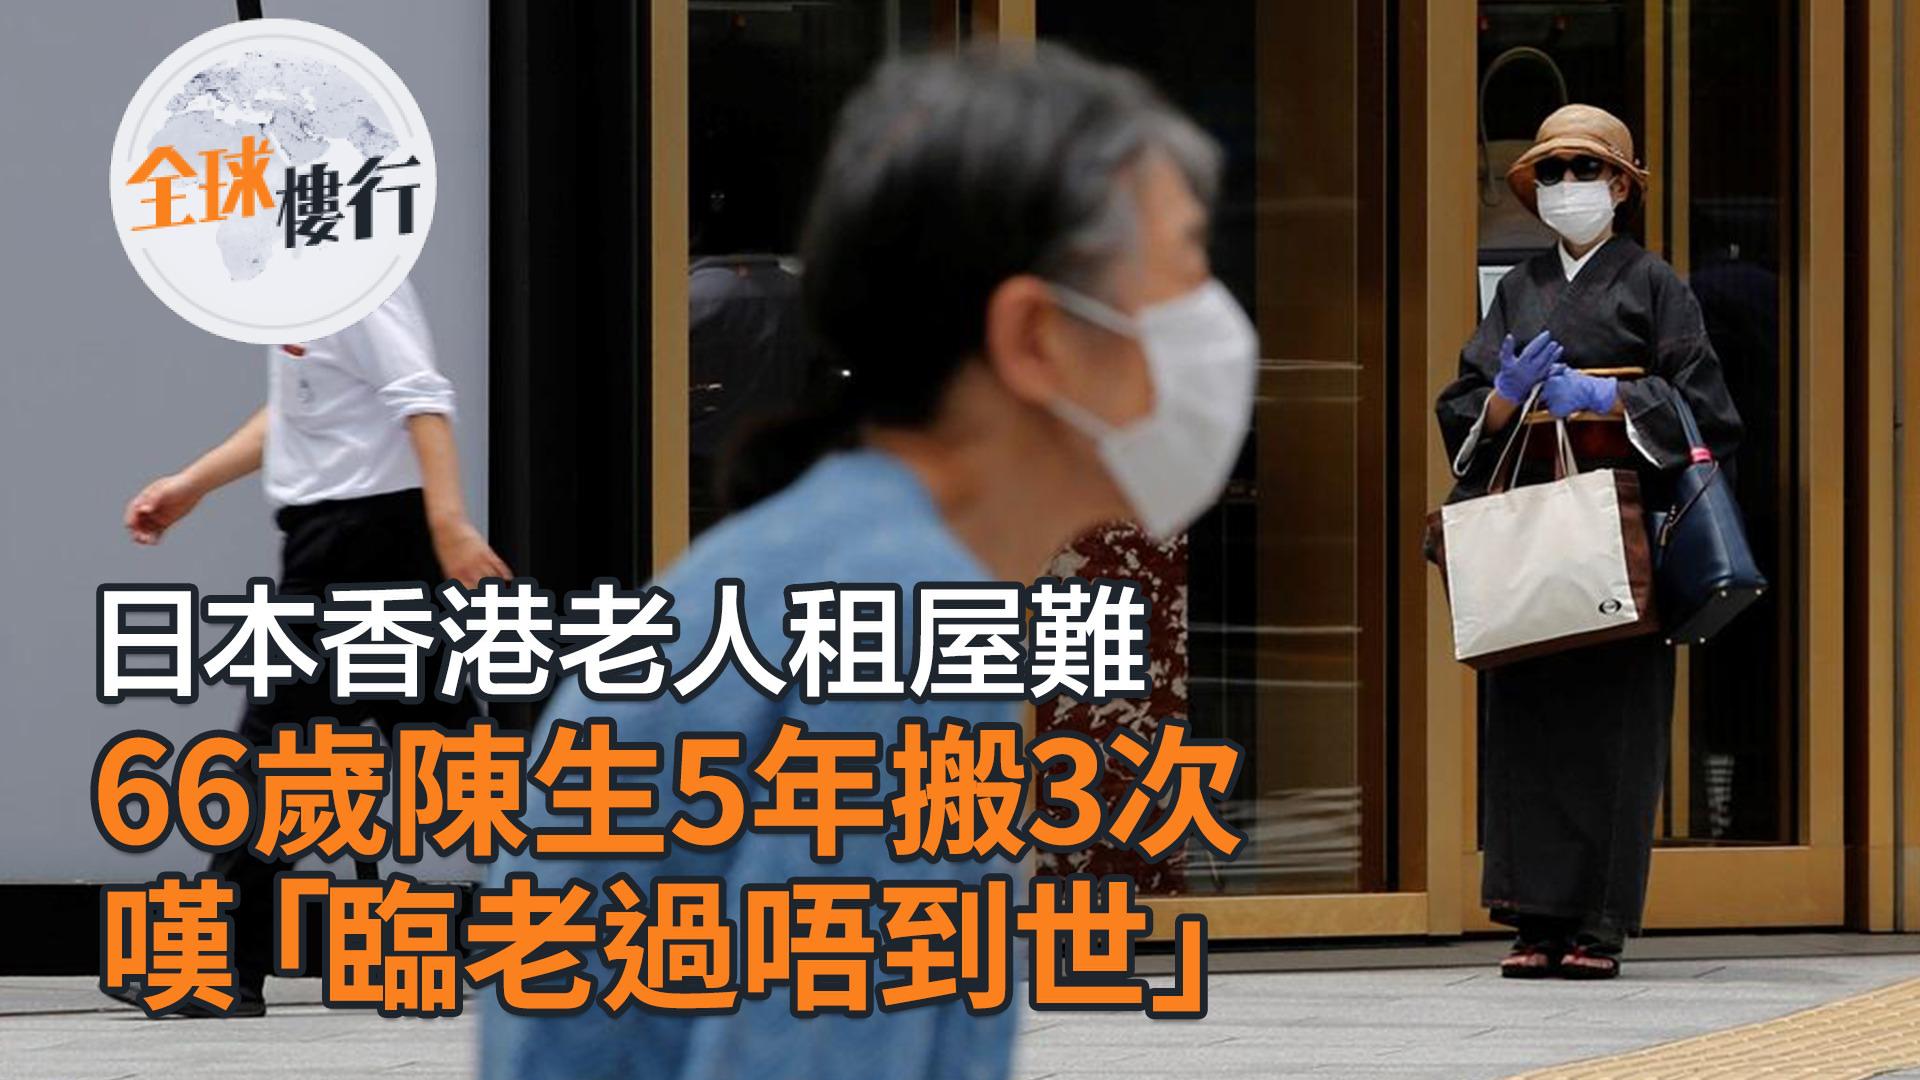 日本 香港老人租屋難 66歲陳生5年搬3次 1年死約即被趕走  嘆「臨老過唔到世」